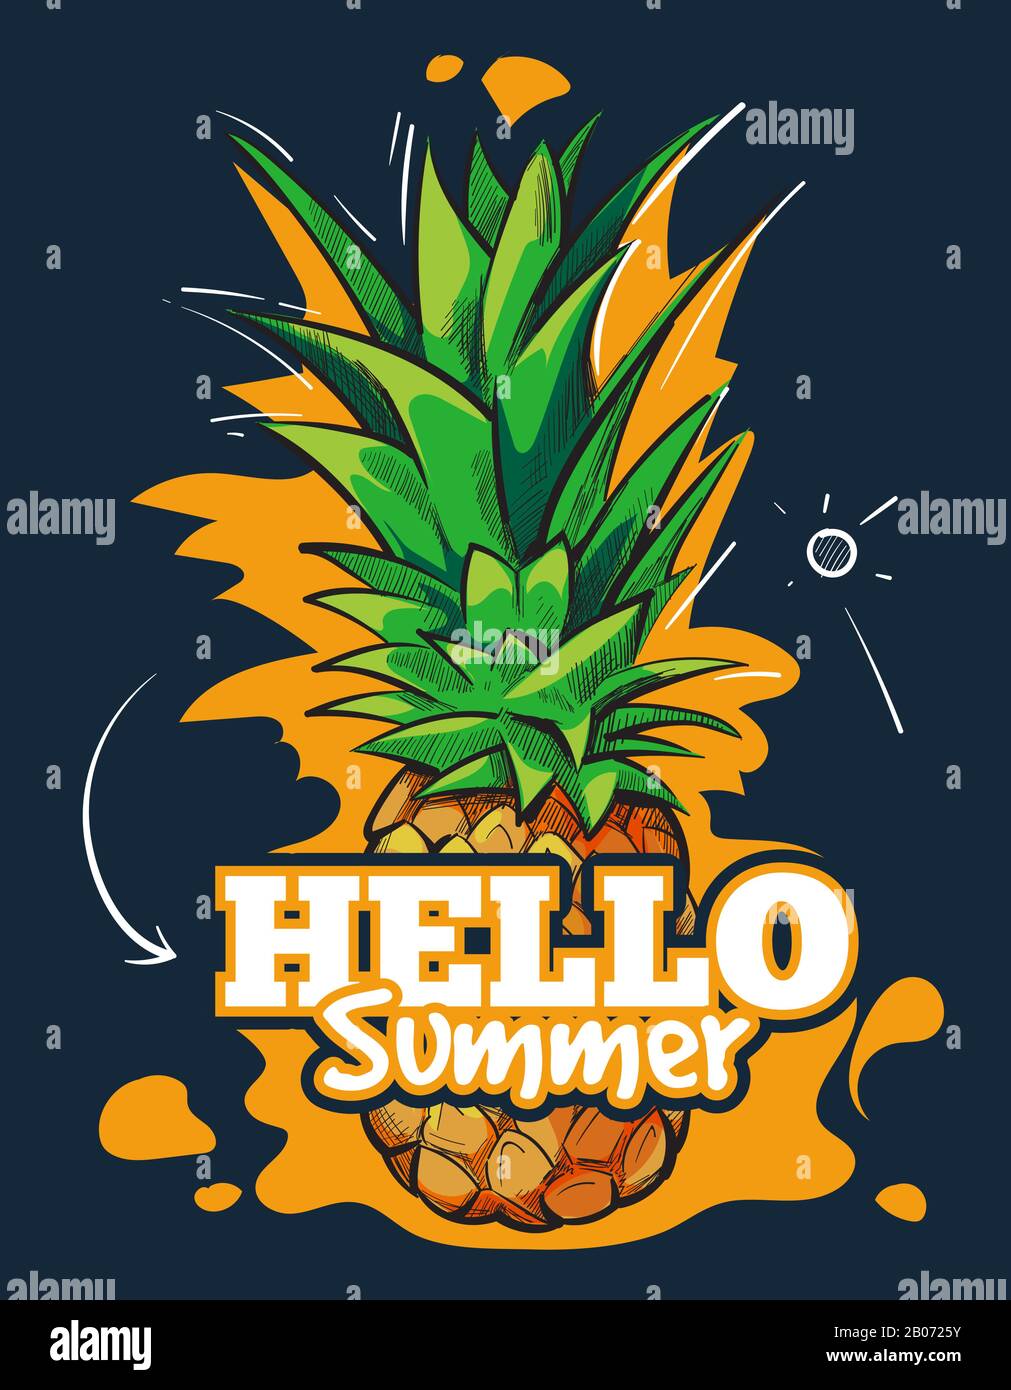 Hola verano vector de fondo de frutas con piña tropical. Cartel con ilustración de alimentos frescos Ilustración del Vector